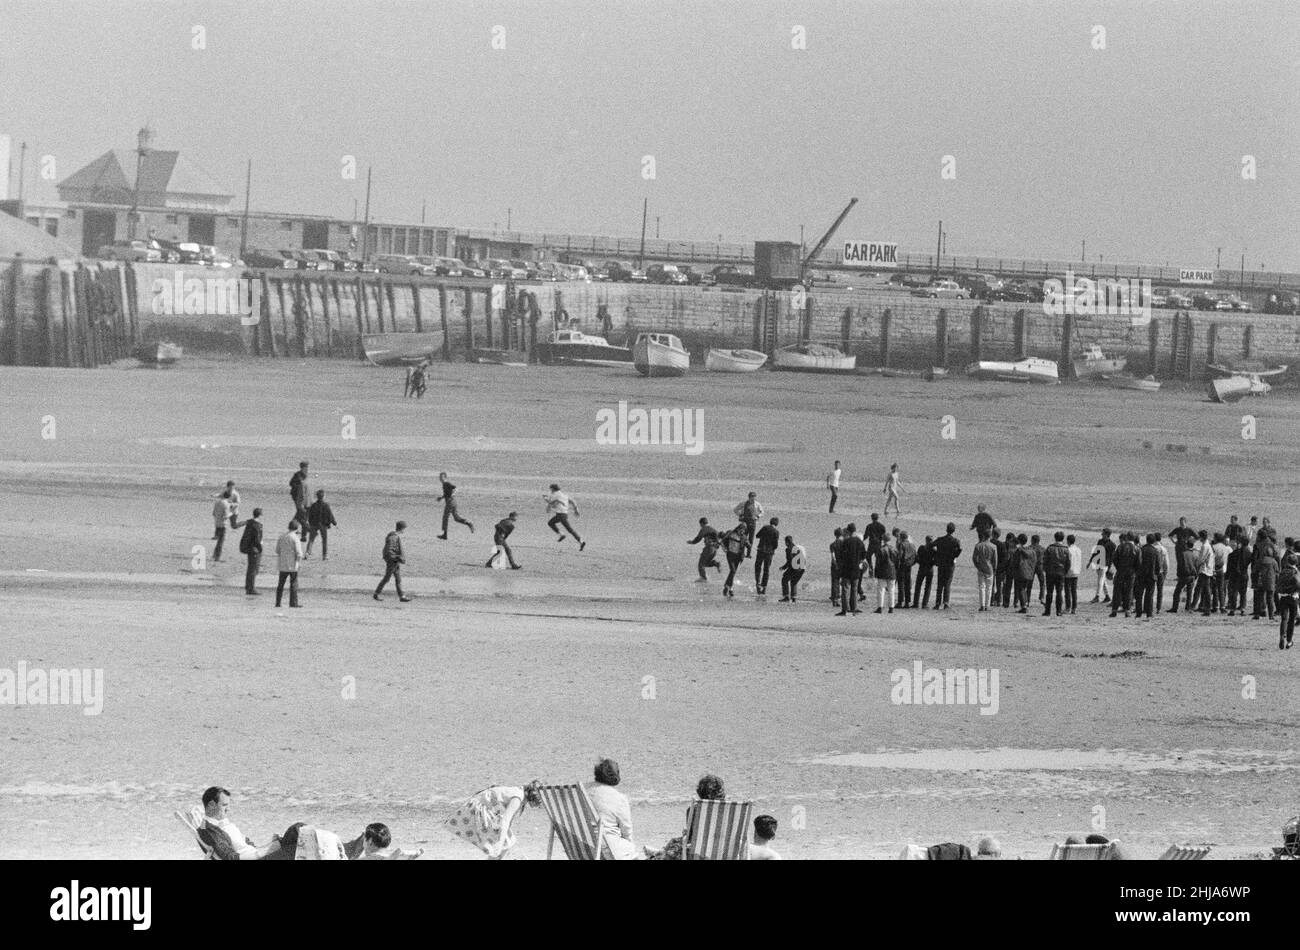 Mods gegen Rockers. Bild zeigt die Szene in Margate, North East Kent im Mai 1964. Mods laufen über den ganzen Strand Bild aufgenommen am 17th. Mai 1964 Stockfoto